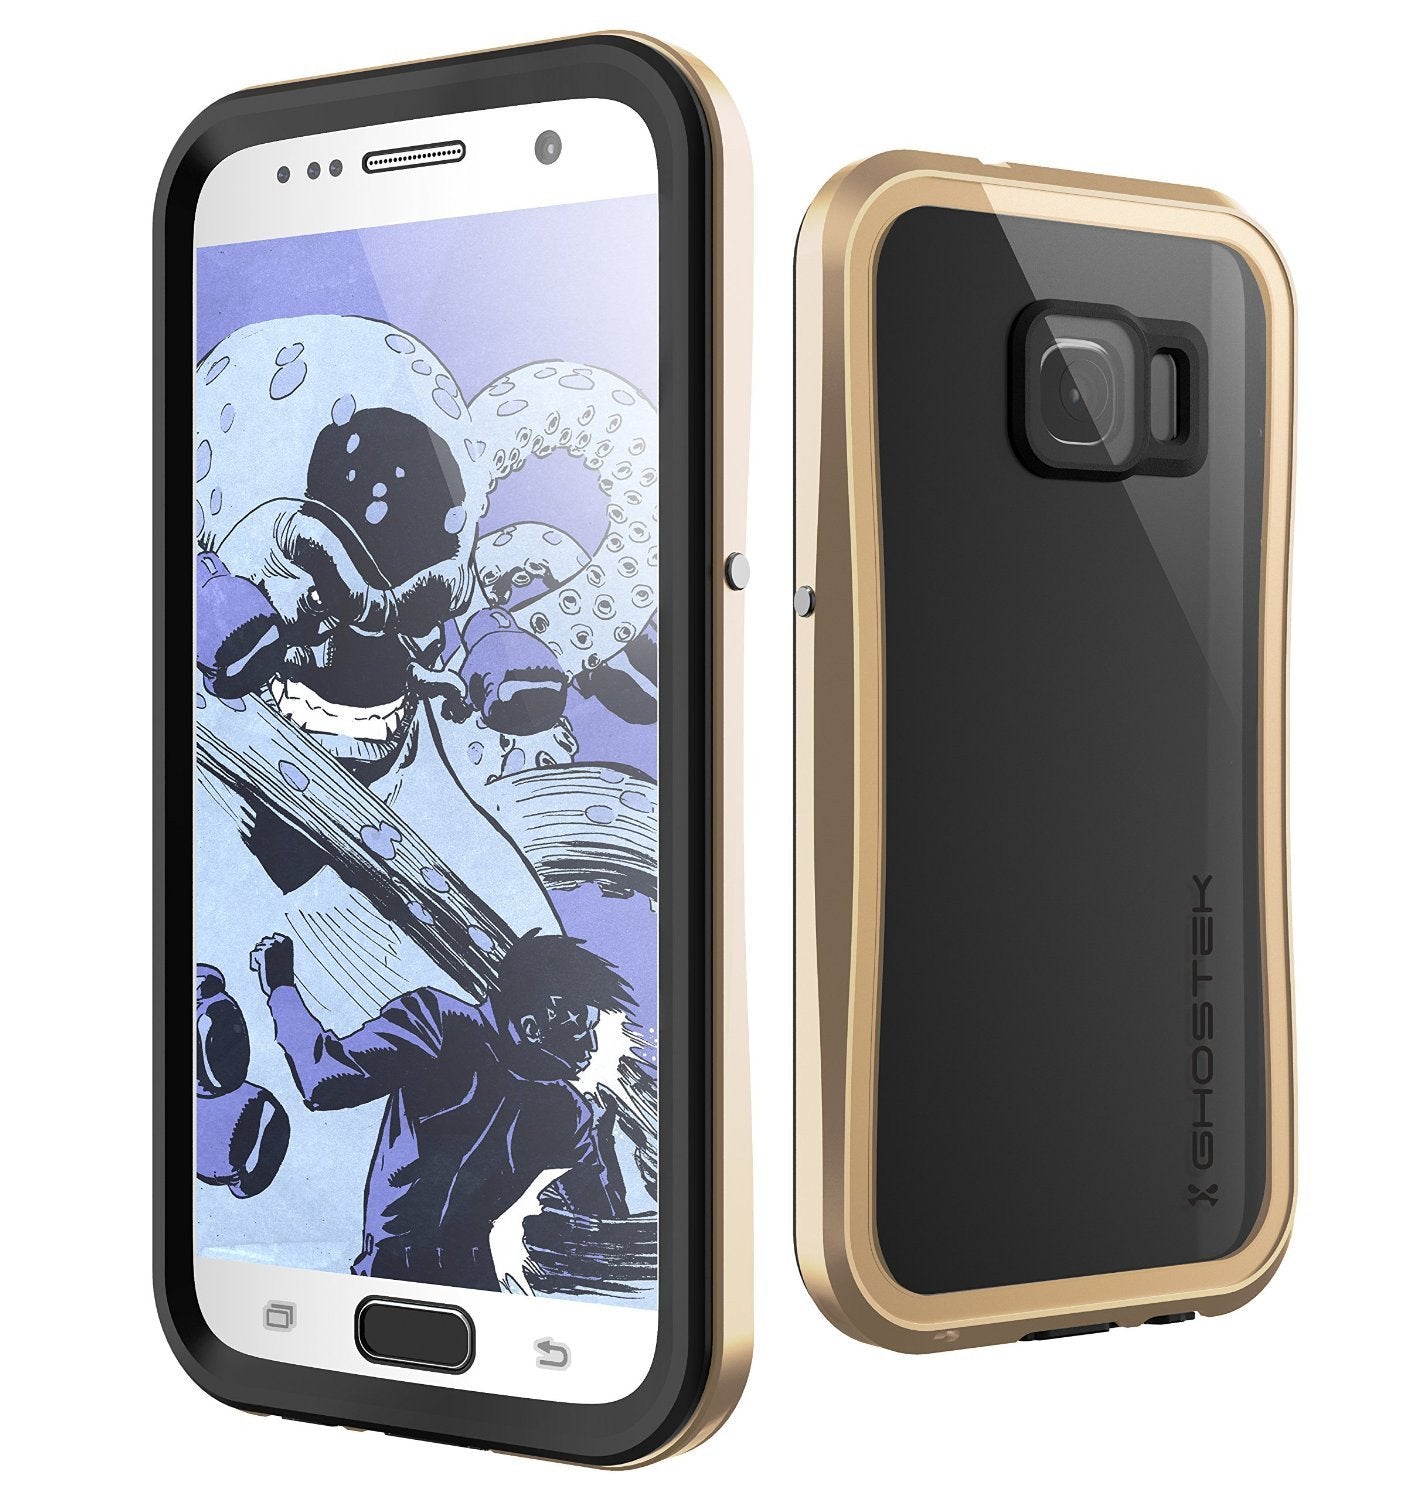 Galaxy S7 Waterproof Case, Ghostek Atomic 2.0 Gold  Water/Shock/Dirt/Snow Proof | Lifetime Warranty